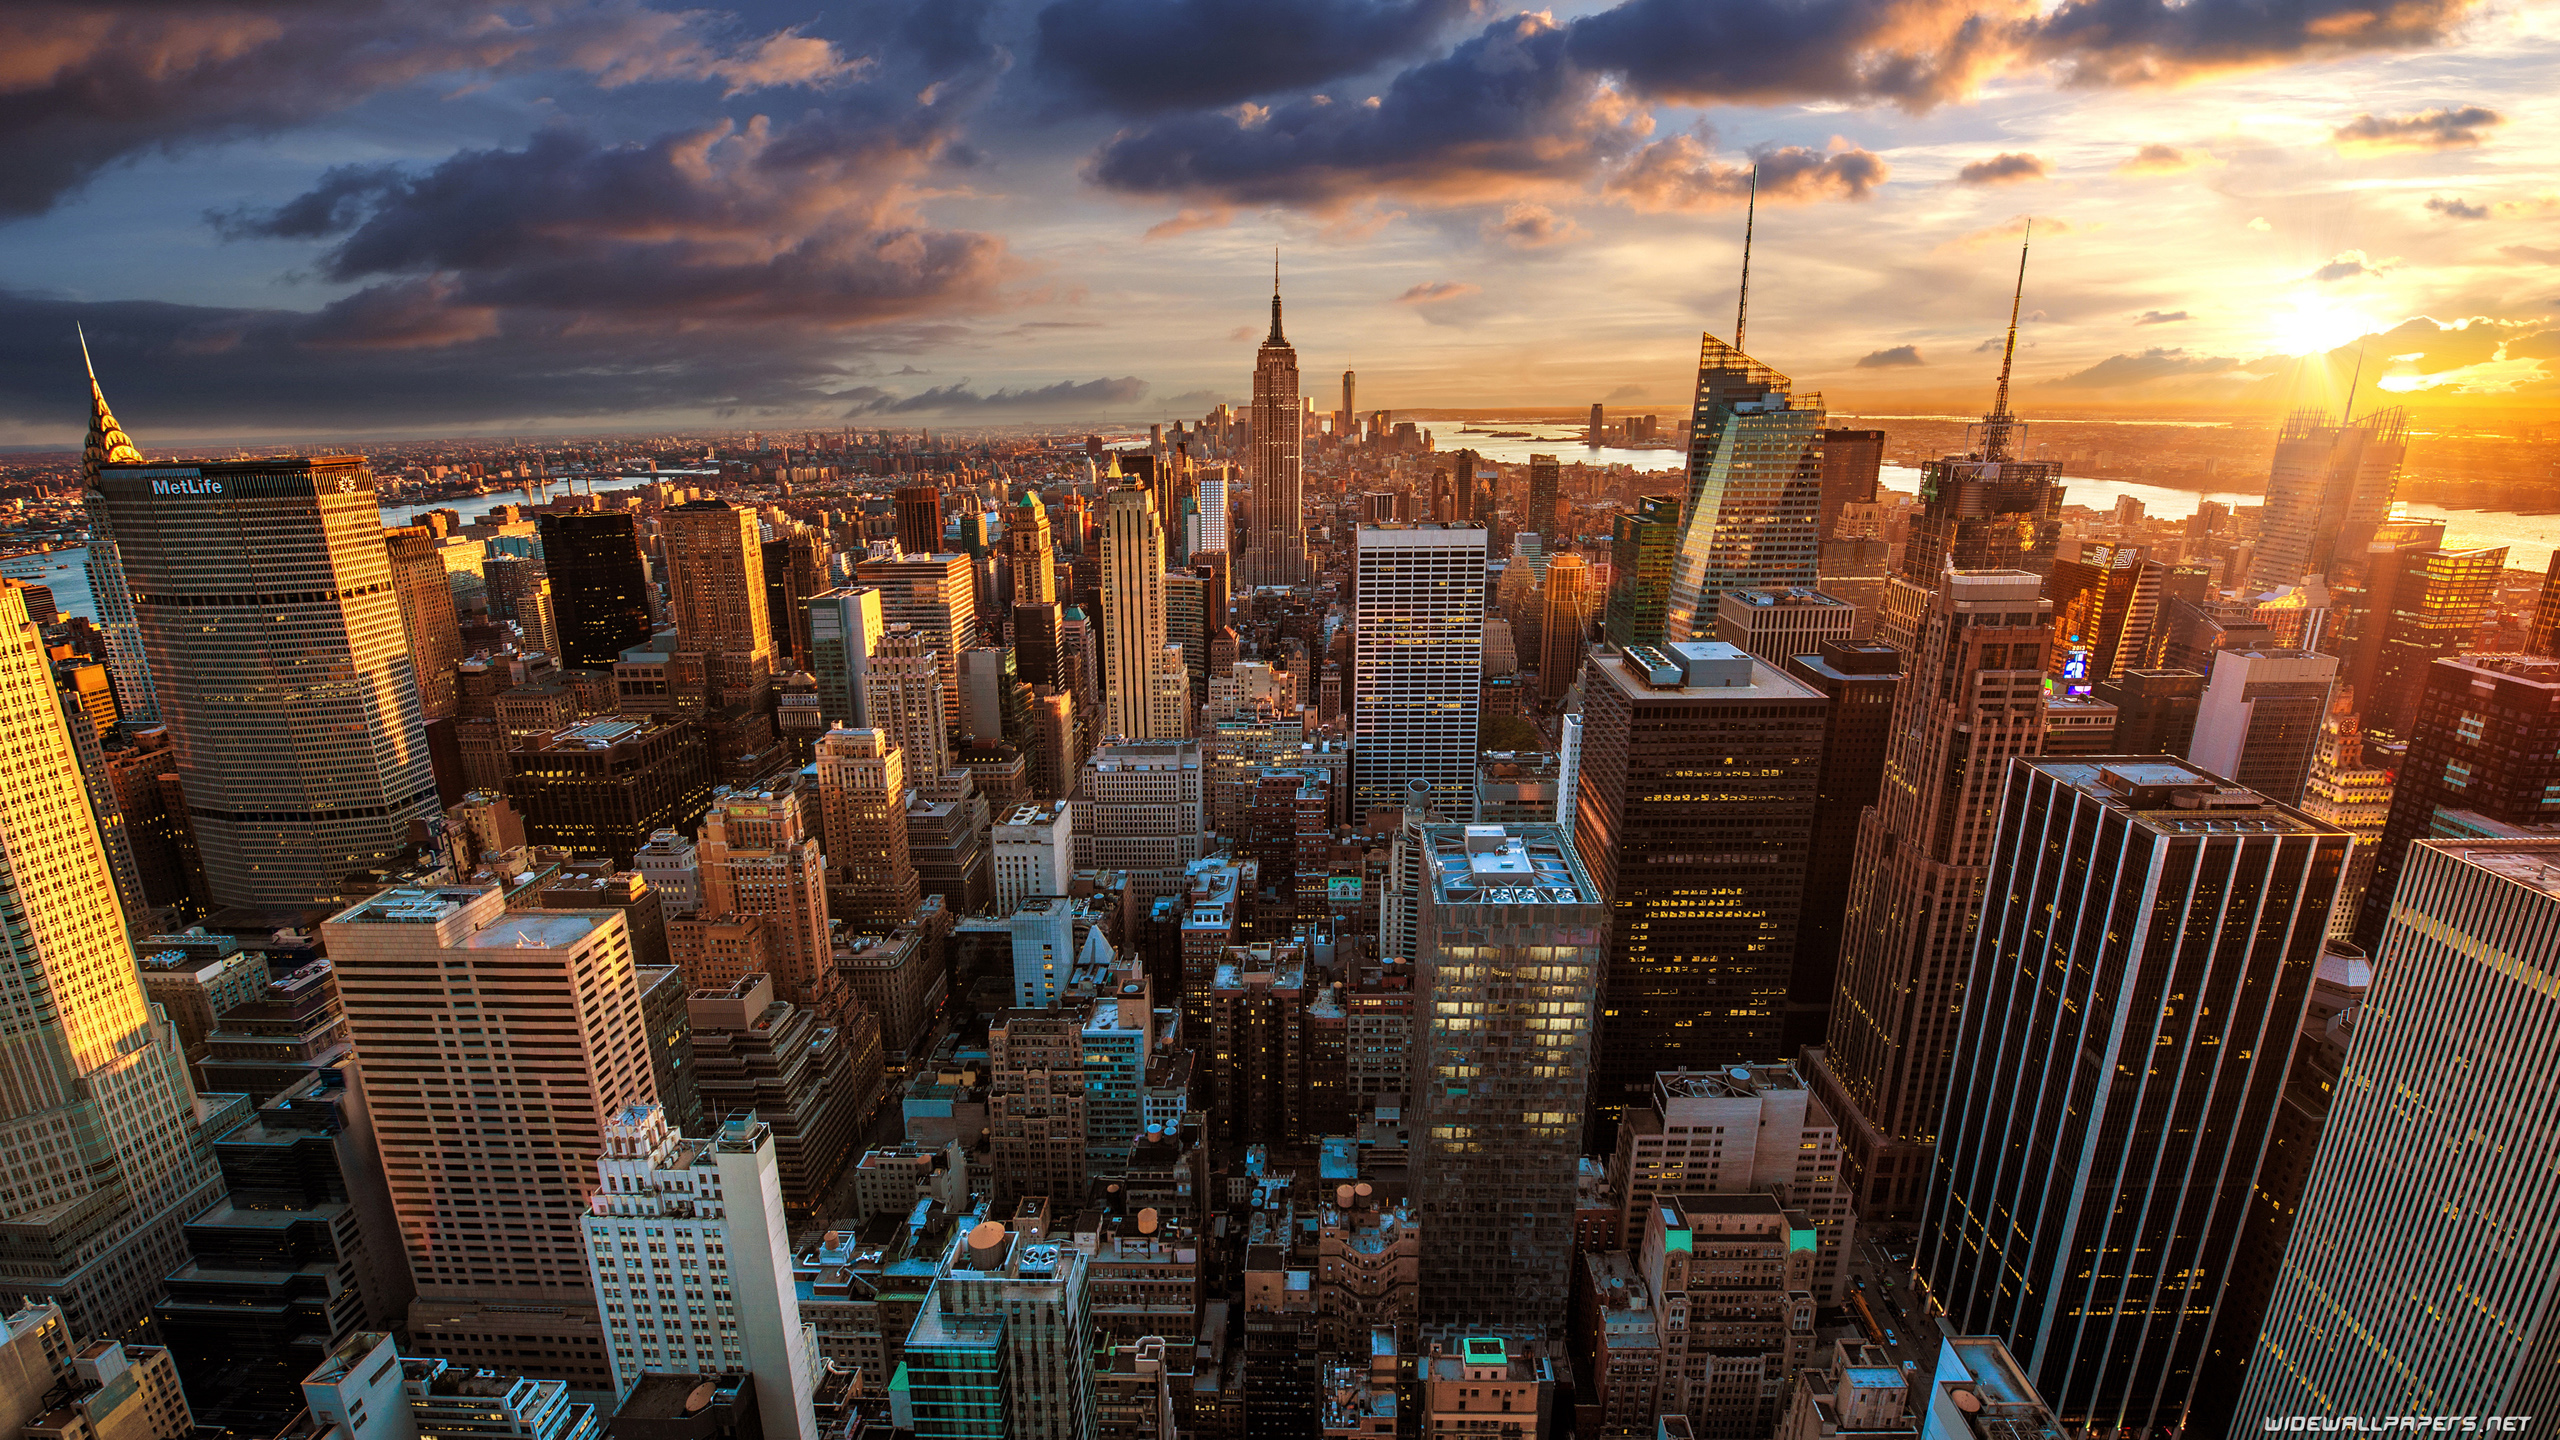 Hình nền New York độ phân giải 4K Ultra HD: Thưởng thức một bức tranh sống động về thành phố lớn nhất nước Mỹ với hình nền New York độ phân giải 4K Ultra HD. Bạn sẽ được chiêm ngưỡng những tòa nhà cao chọc trời, tuyến phố nhộn nhịp và cảm giác sống động nhất của thành phố này. Hãy tạo ra một không gian làm việc độc đáo với hình nền New York độ phân giải 4K Ultra HD này.